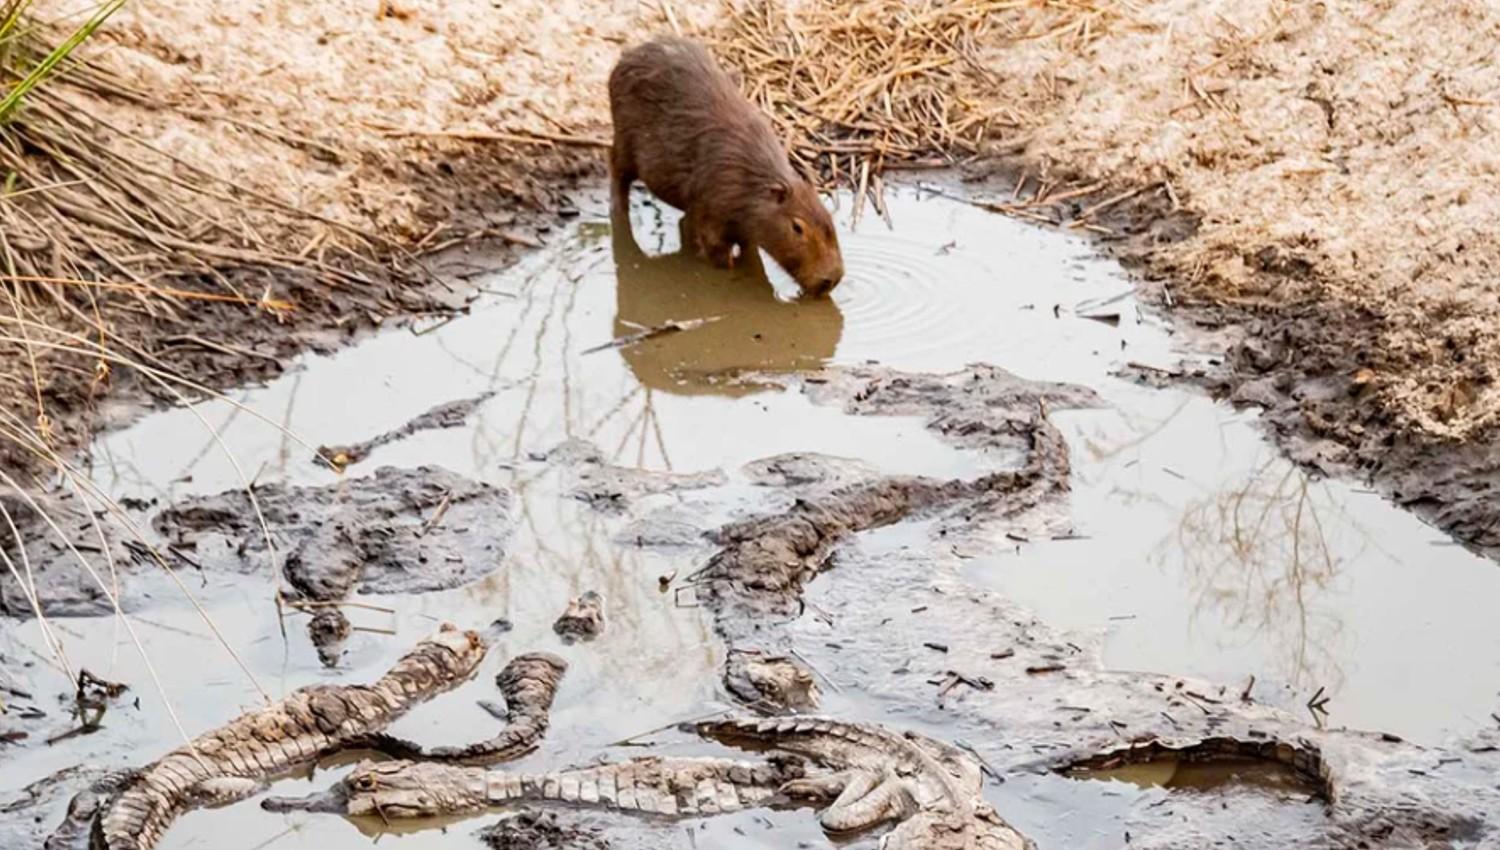 LA FAUNA EN PELIGRO. Un carpincho intenta tomar agua en un estanque atestado de yacarés.